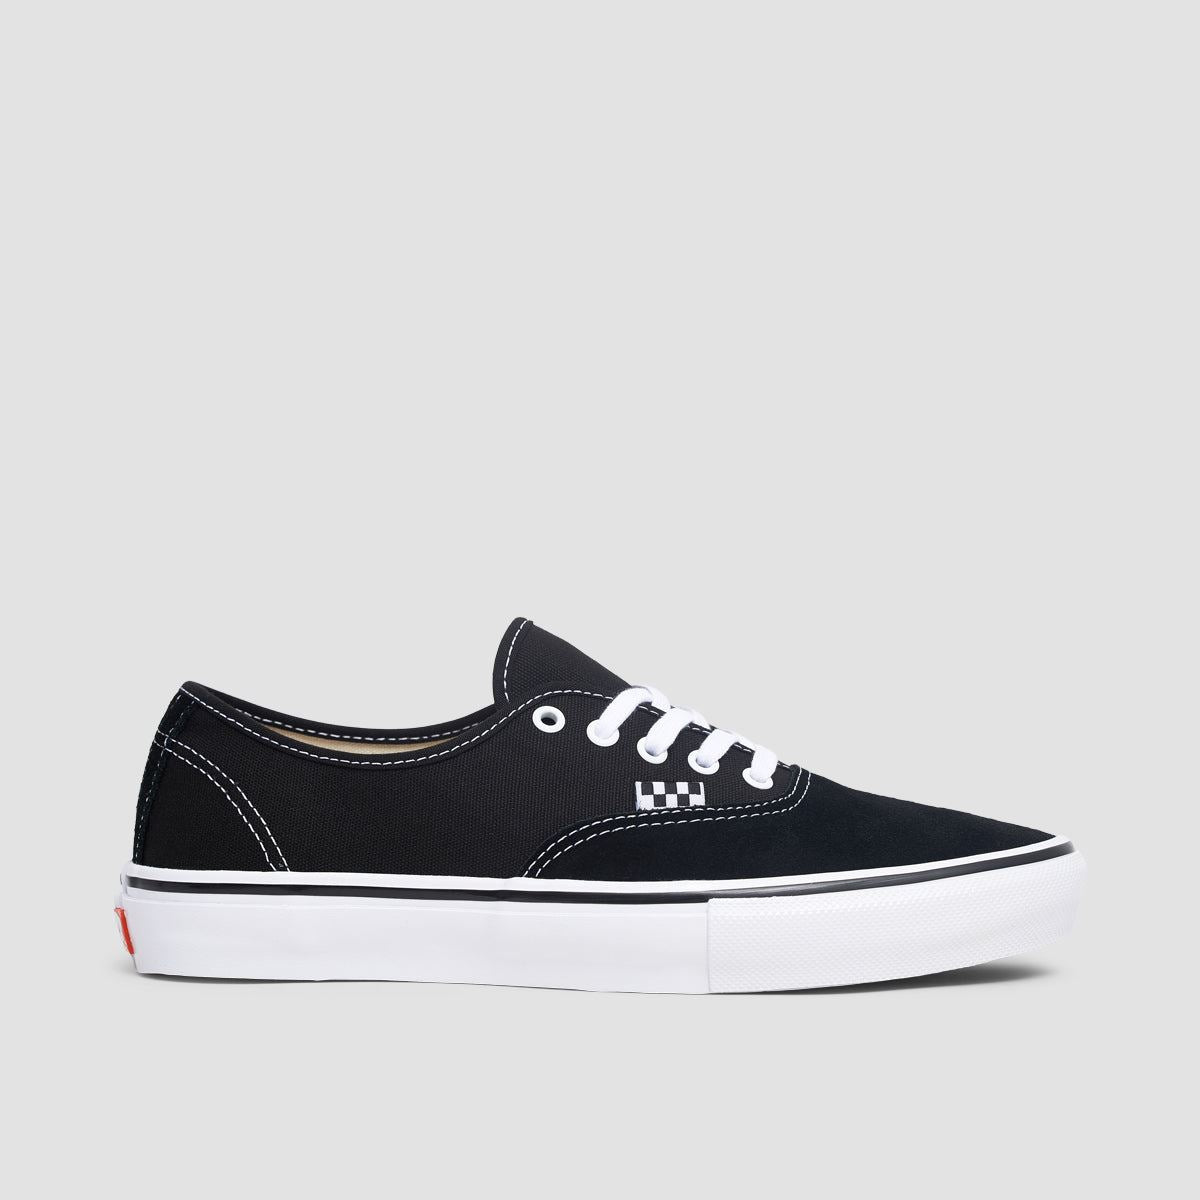 Vans Skate Authentic Shoes - Black/White